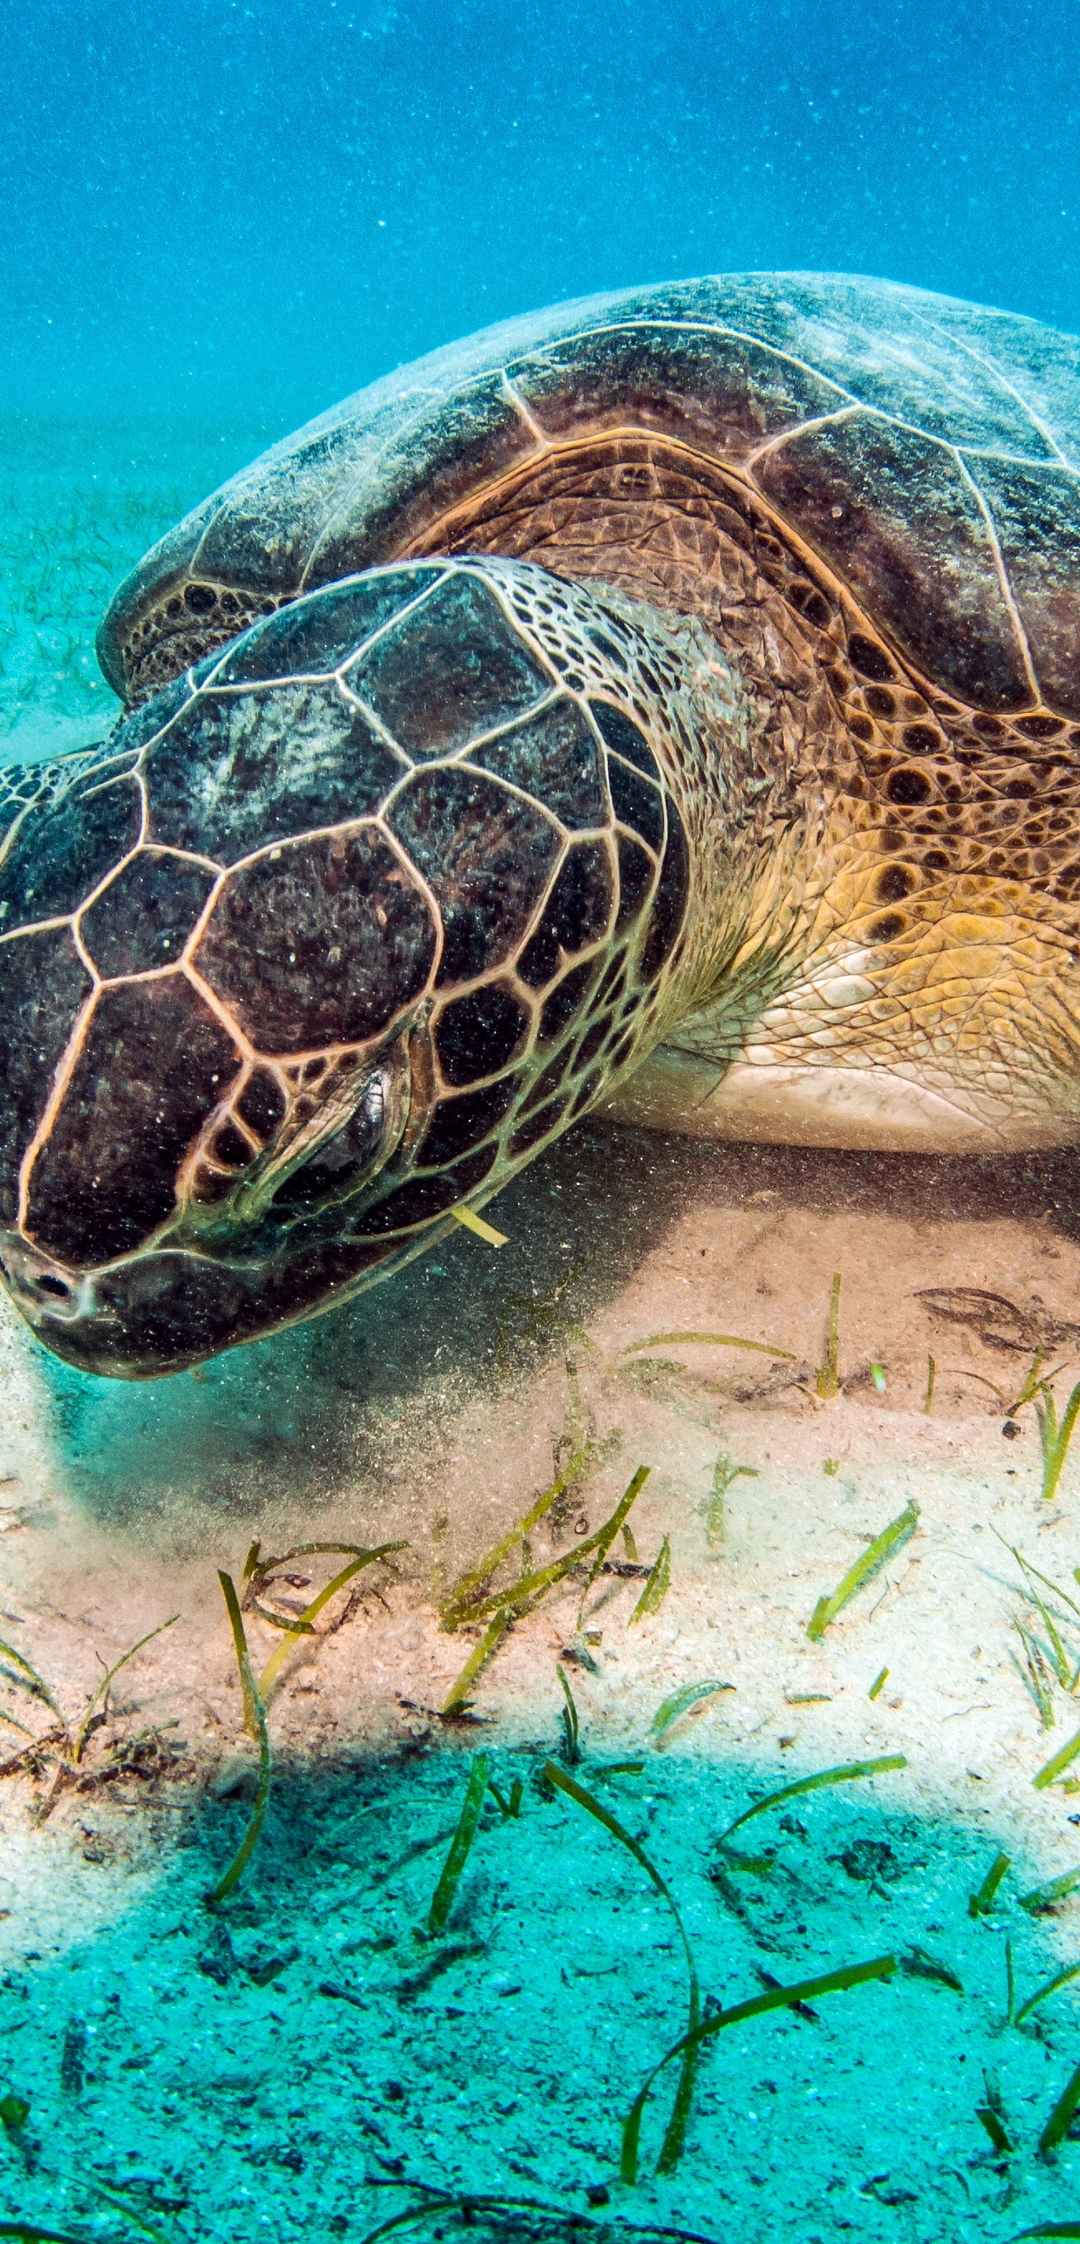 Картинка: Морская черепаха, песок, дно, растения, освещение